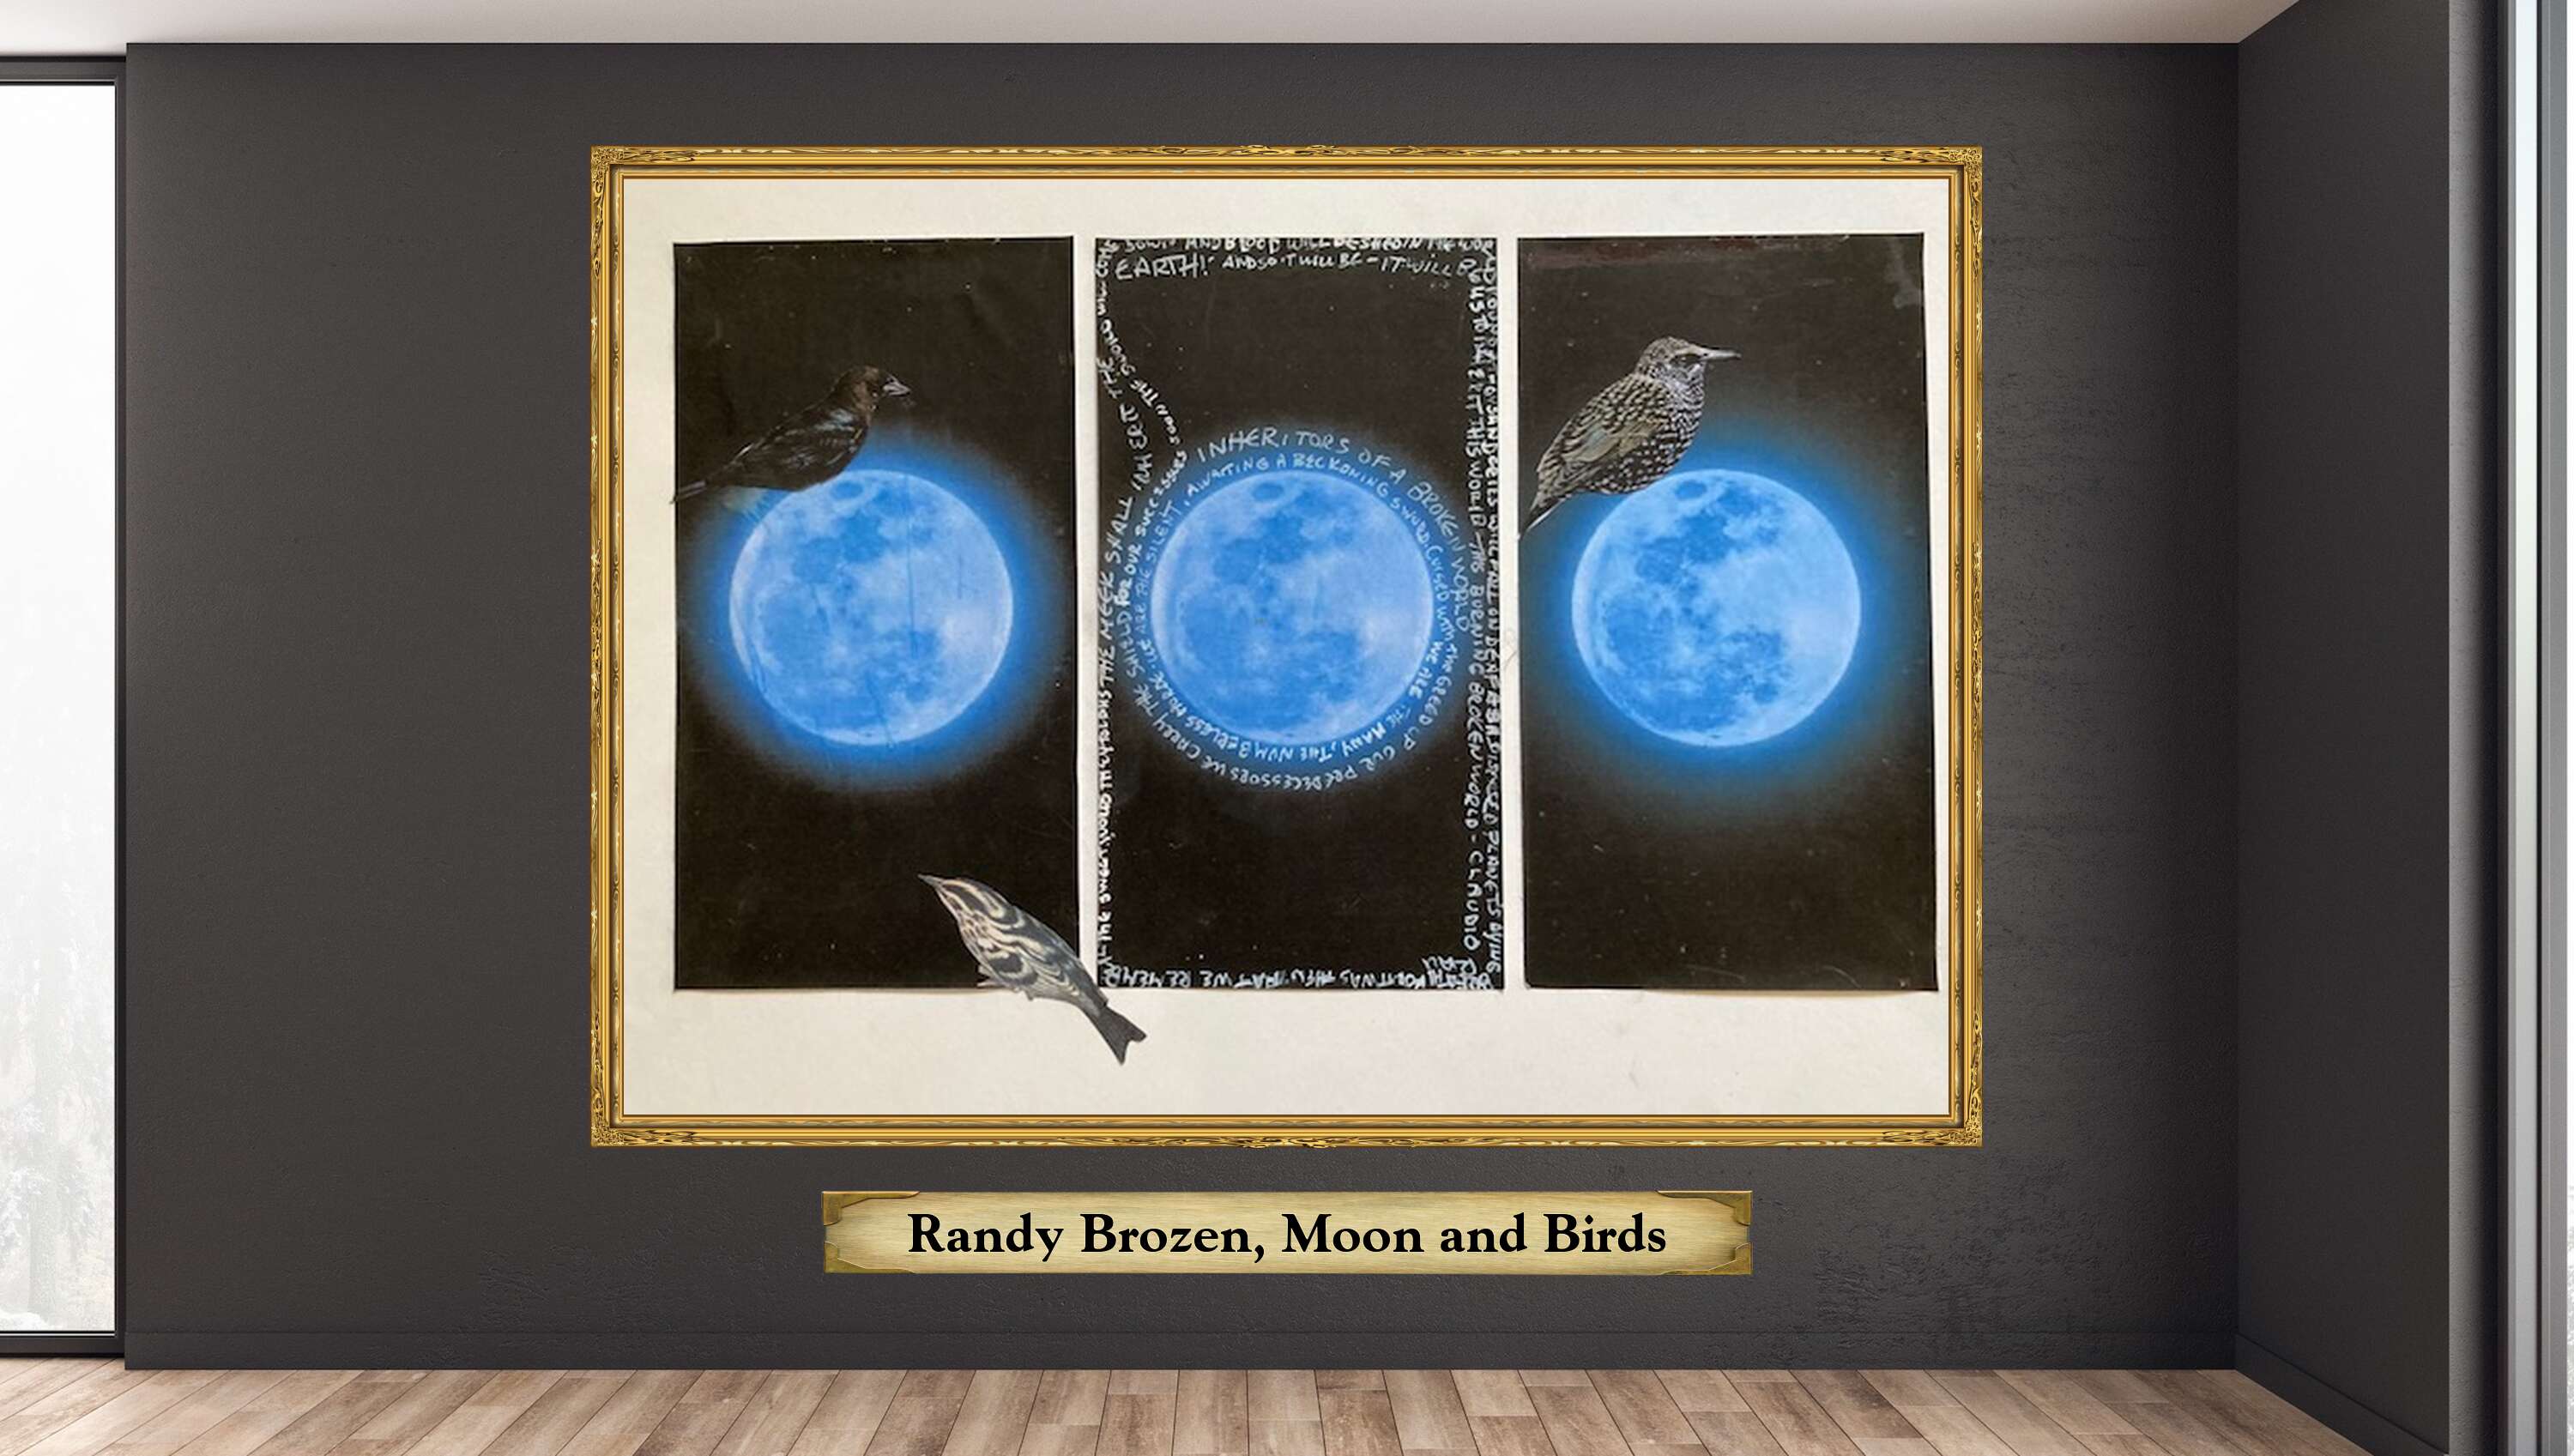 Randy Brozen, Moon and Birds